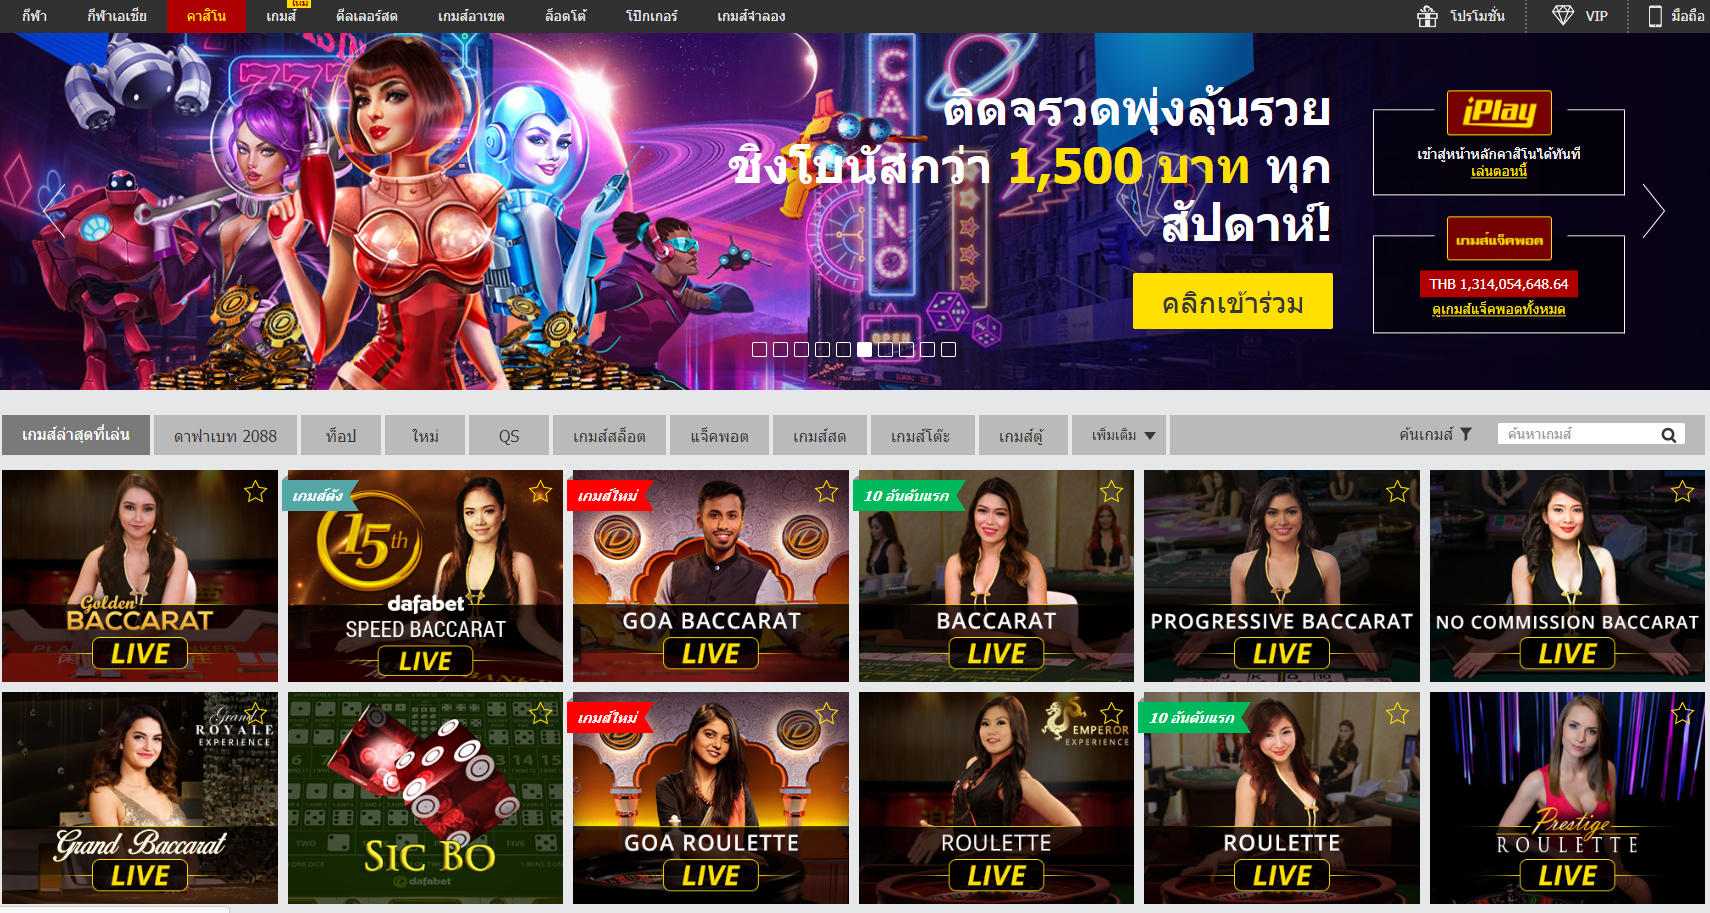 หน้าคาสิโน Dafabet - casinoออนไลน์